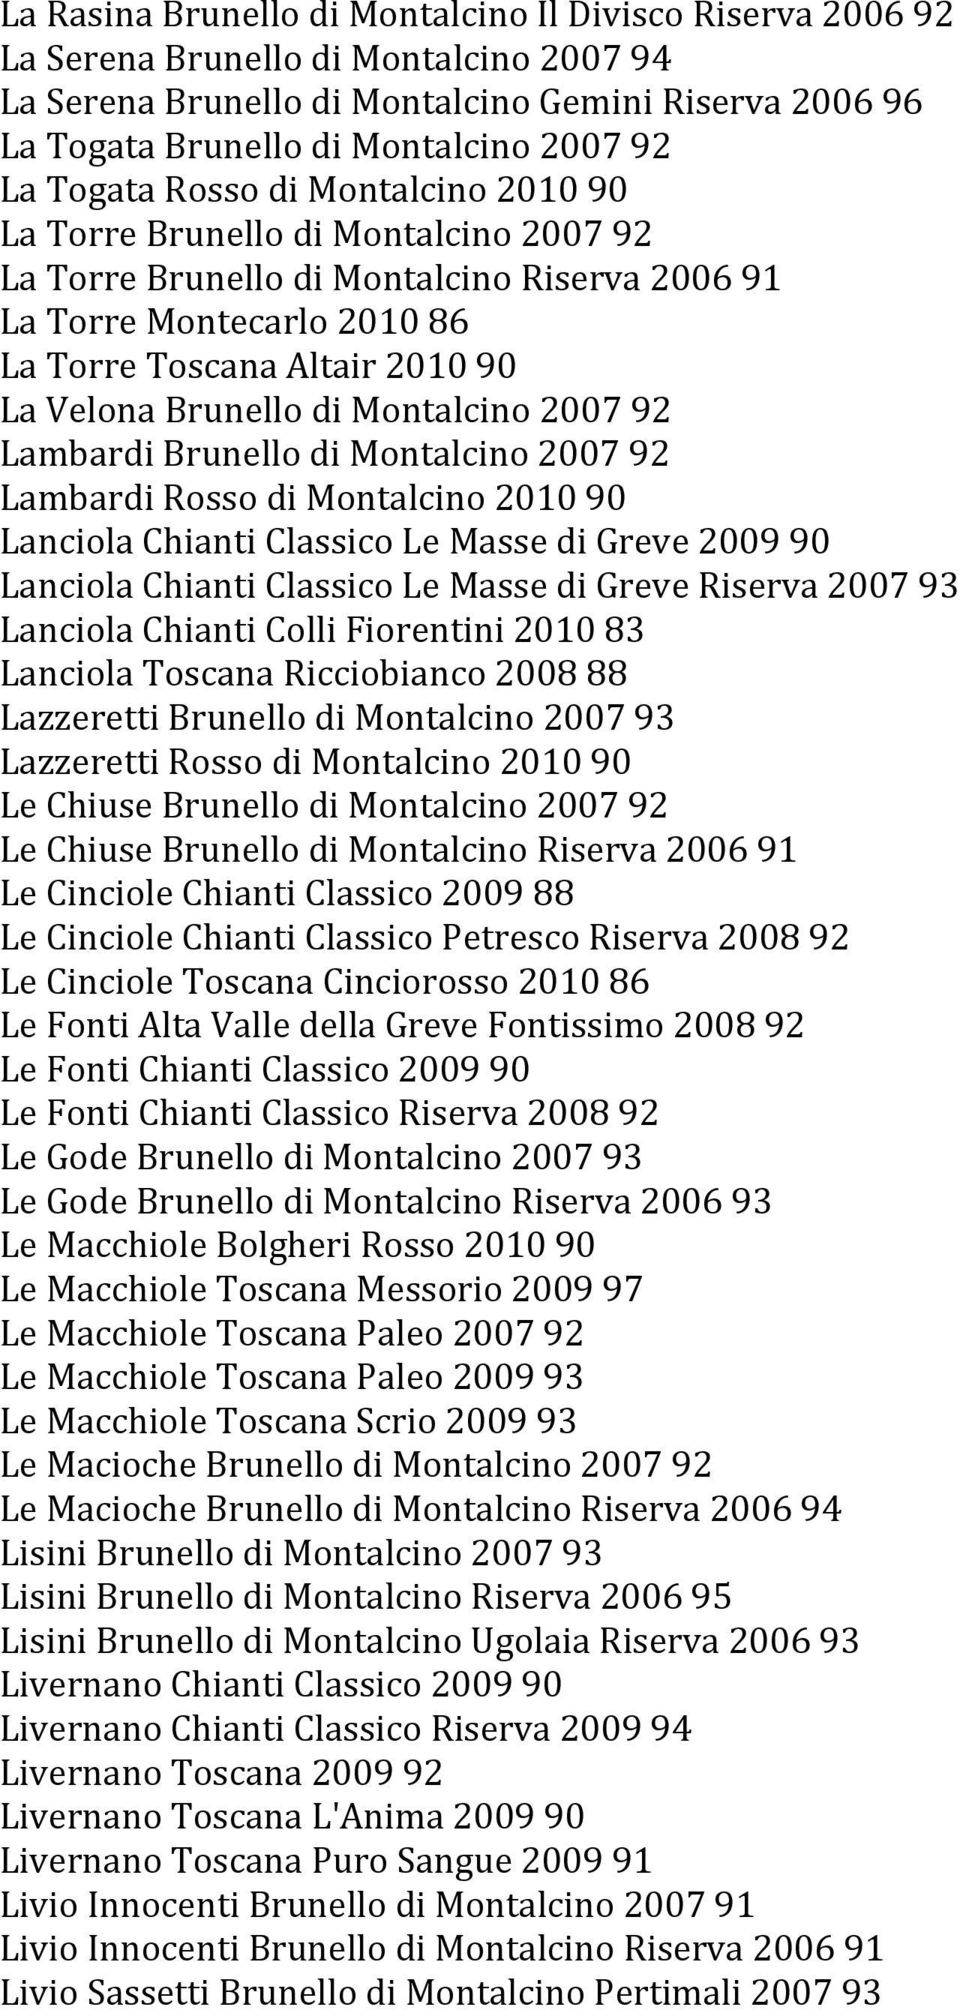 Brunello di Montalcino 2007 92 Lambardi Brunello di Montalcino 2007 92 Lambardi Rosso di Montalcino 2010 90 Lanciola Chianti Classico Le Masse di Greve 2009 90 Lanciola Chianti Classico Le Masse di